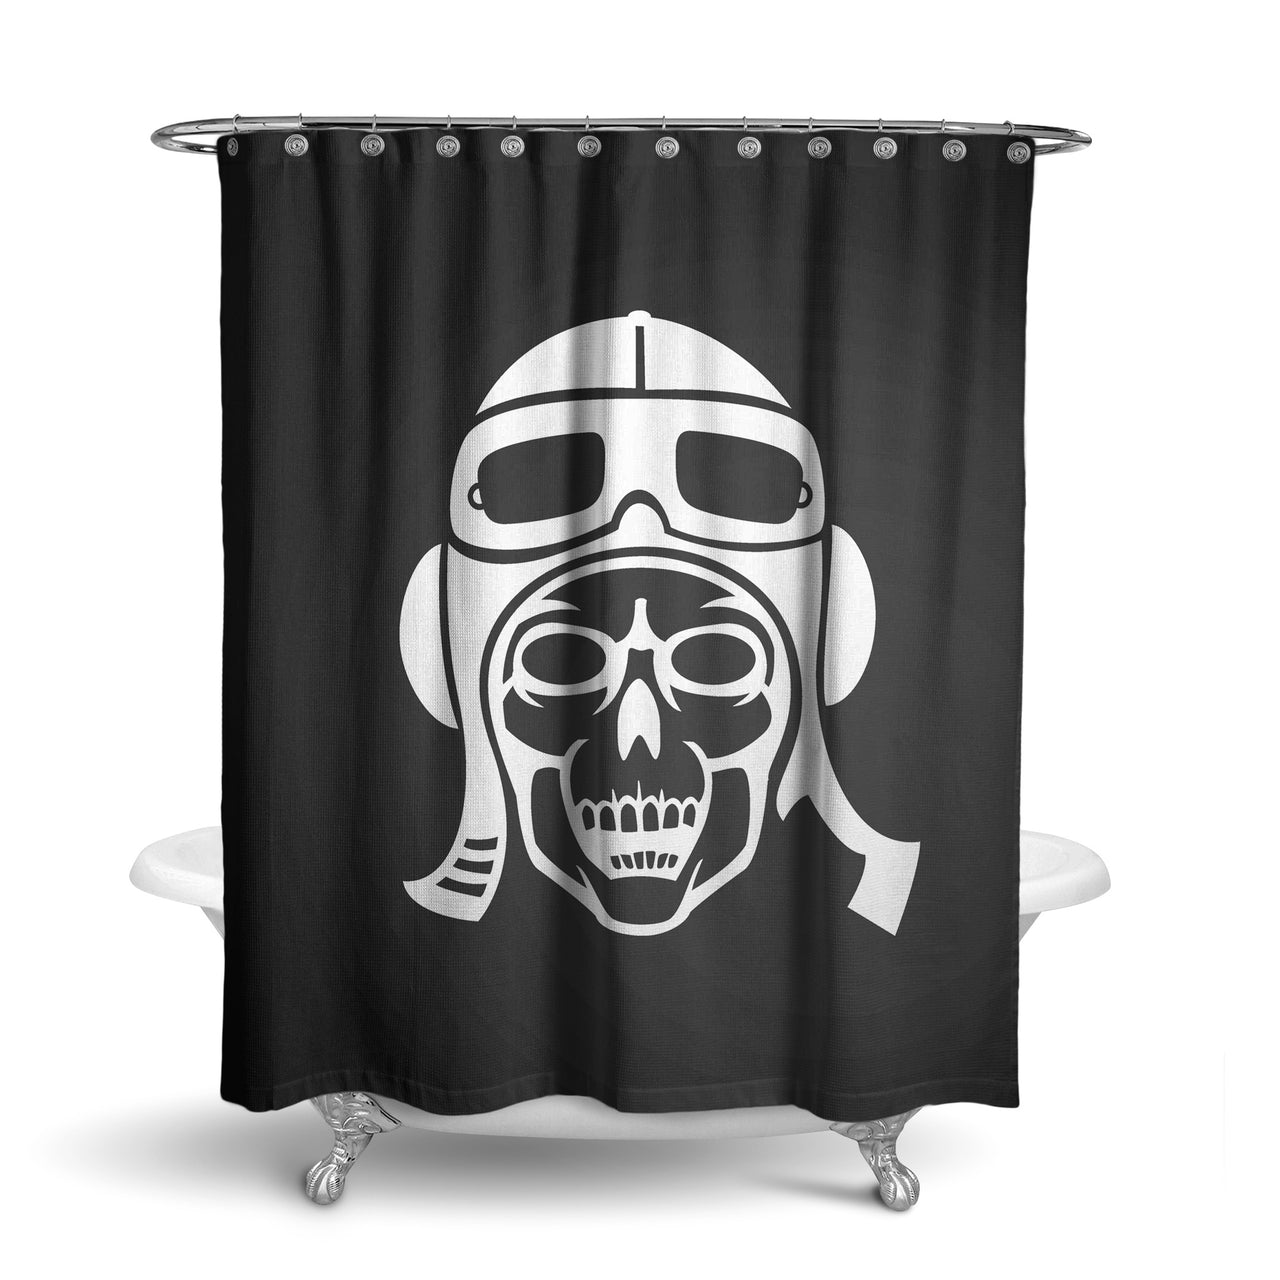 Skeleton Pilot Designed Shower Curtains